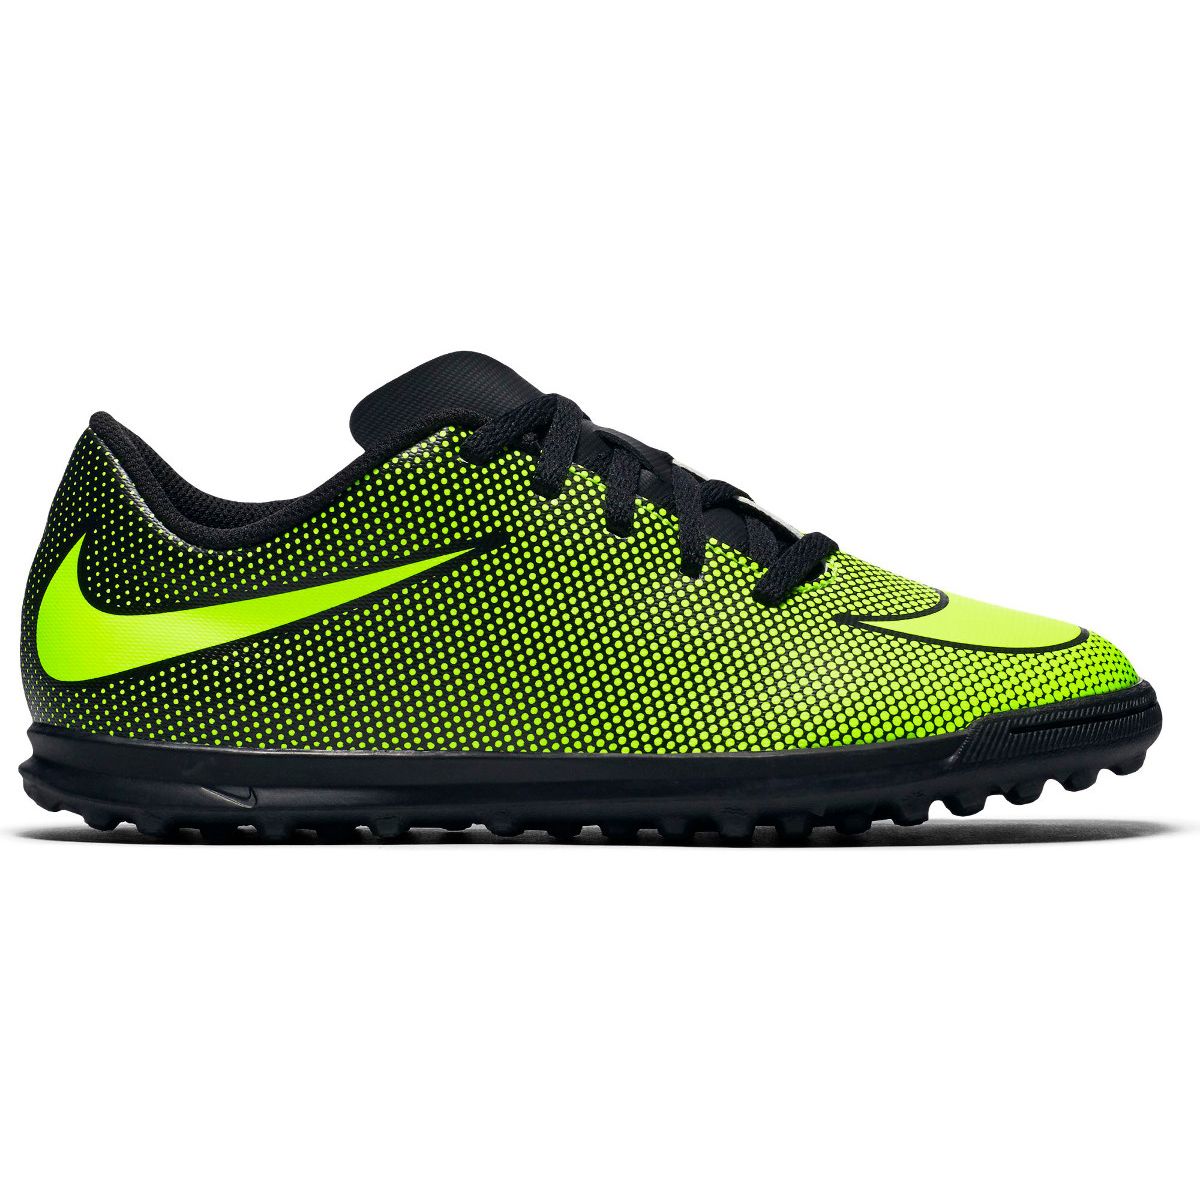 Nike Jr. BravataX II (TF) Turf Kids' Football Boots 844440-0